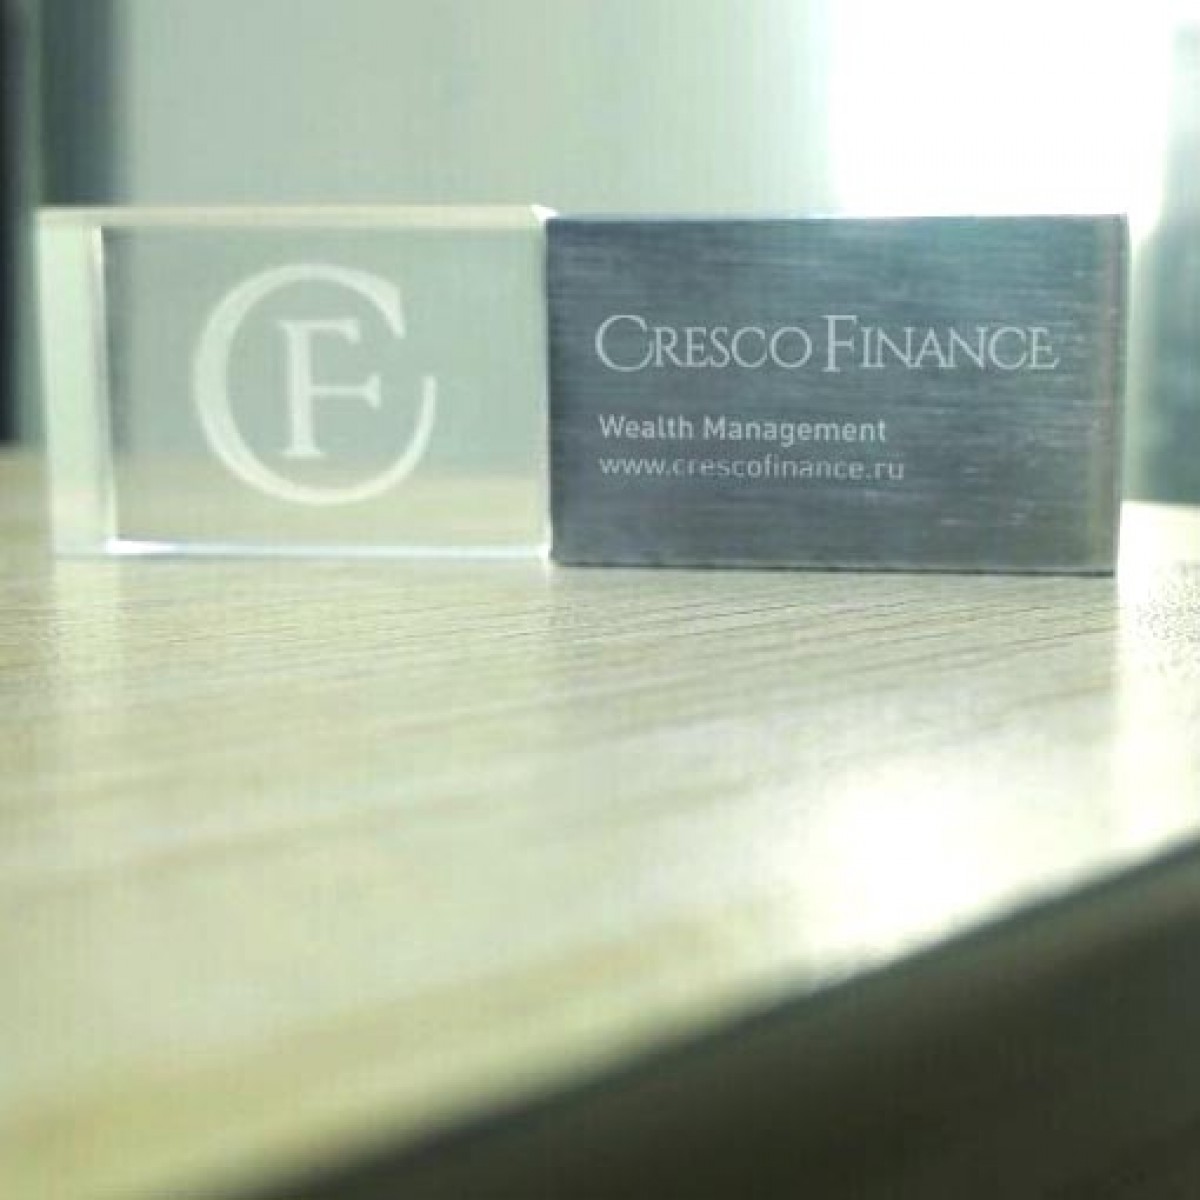 Флешка светящаяся с объемным 3D логотипом "Cresco Finance"